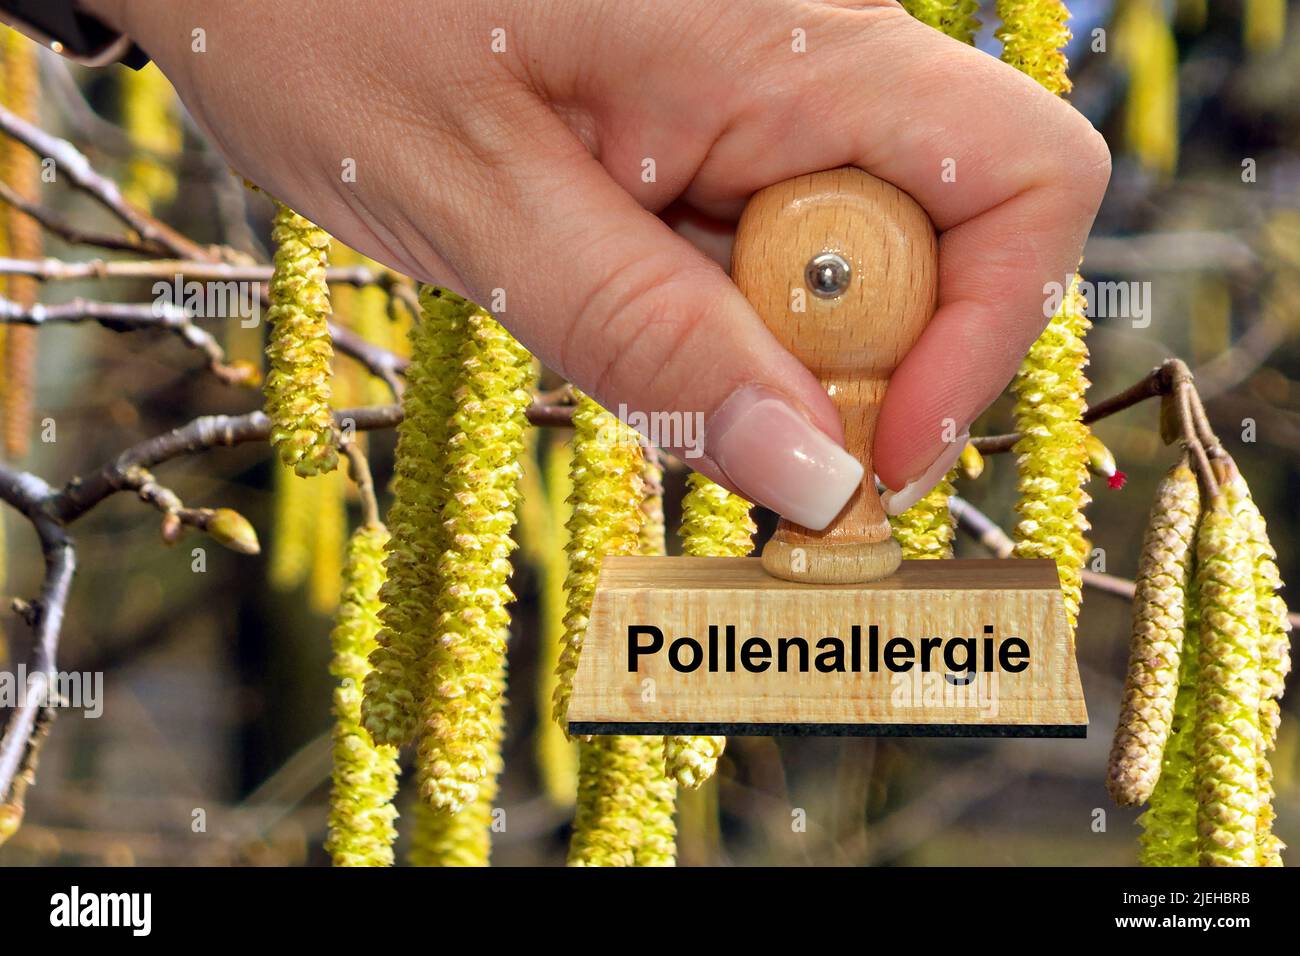 Blüten der Gemeinde Hasel - Haselnußstrauch, Hand mit Stemple, Pollenallergie, Stockfoto